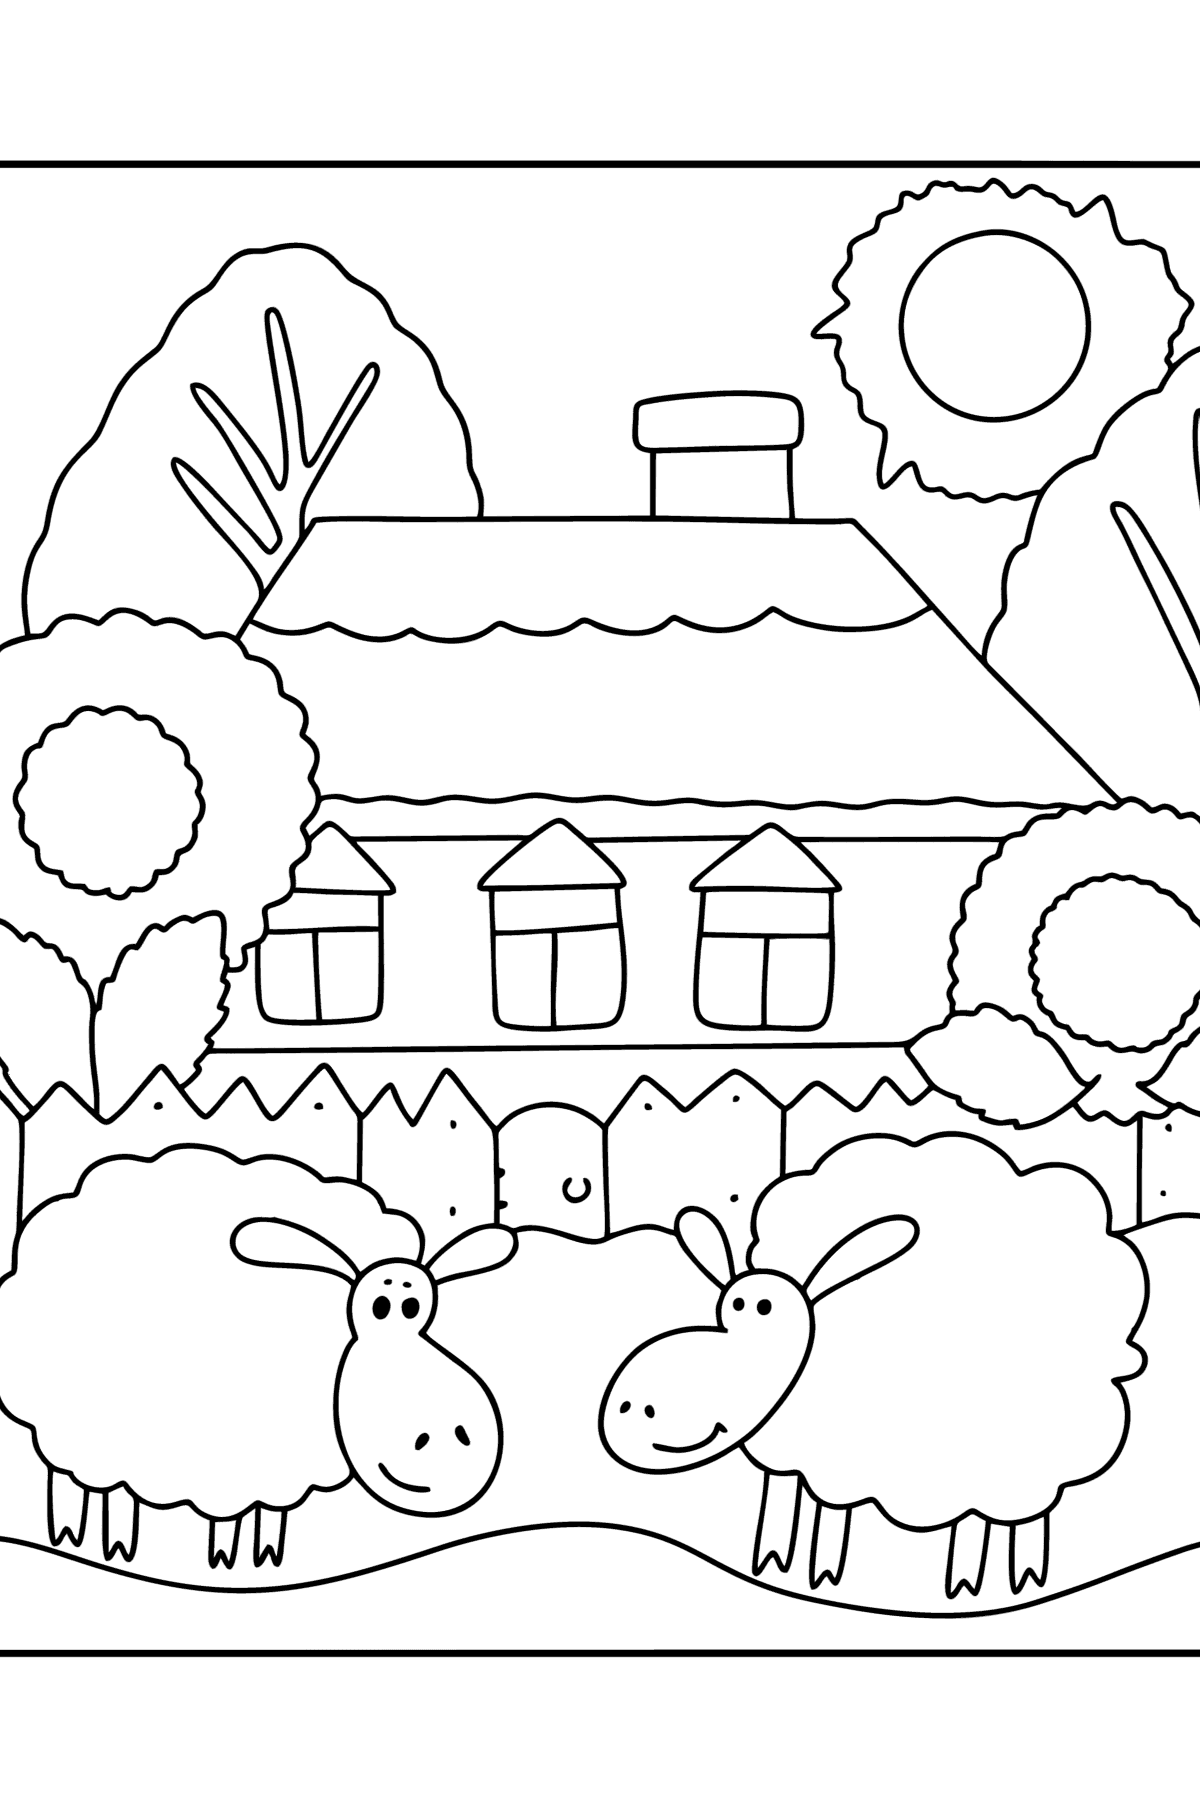 Раскраска Сельский домик - Картинки для Детей